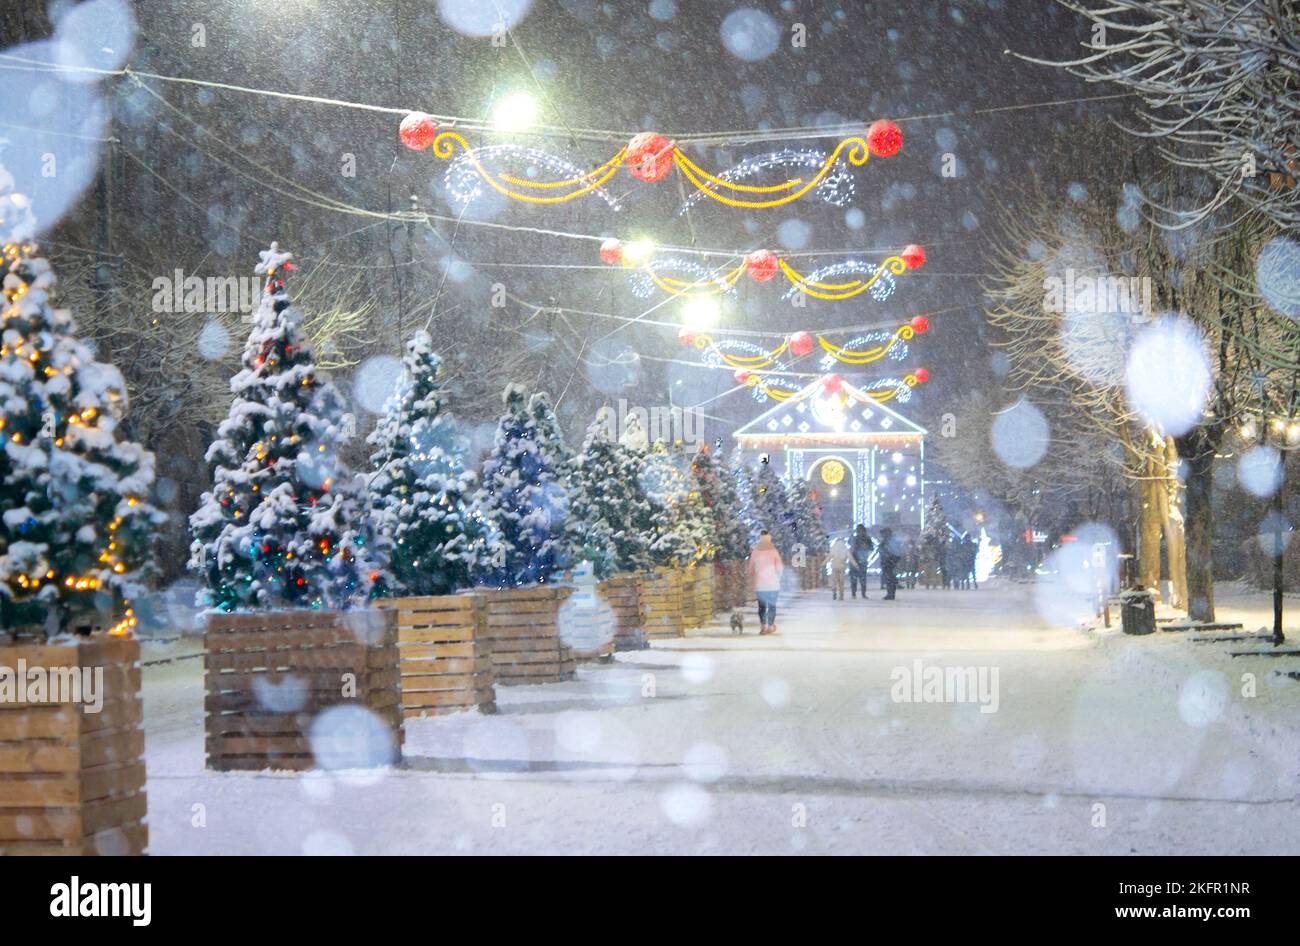 Rue de la ville pendant les chutes de neige en hiver. Beaucoup d'arbres de Noël décorés, éclairage, décoration sur la rue. Fête de Noël du nouvel an. Lanternes sur les arbres Banque D'Images